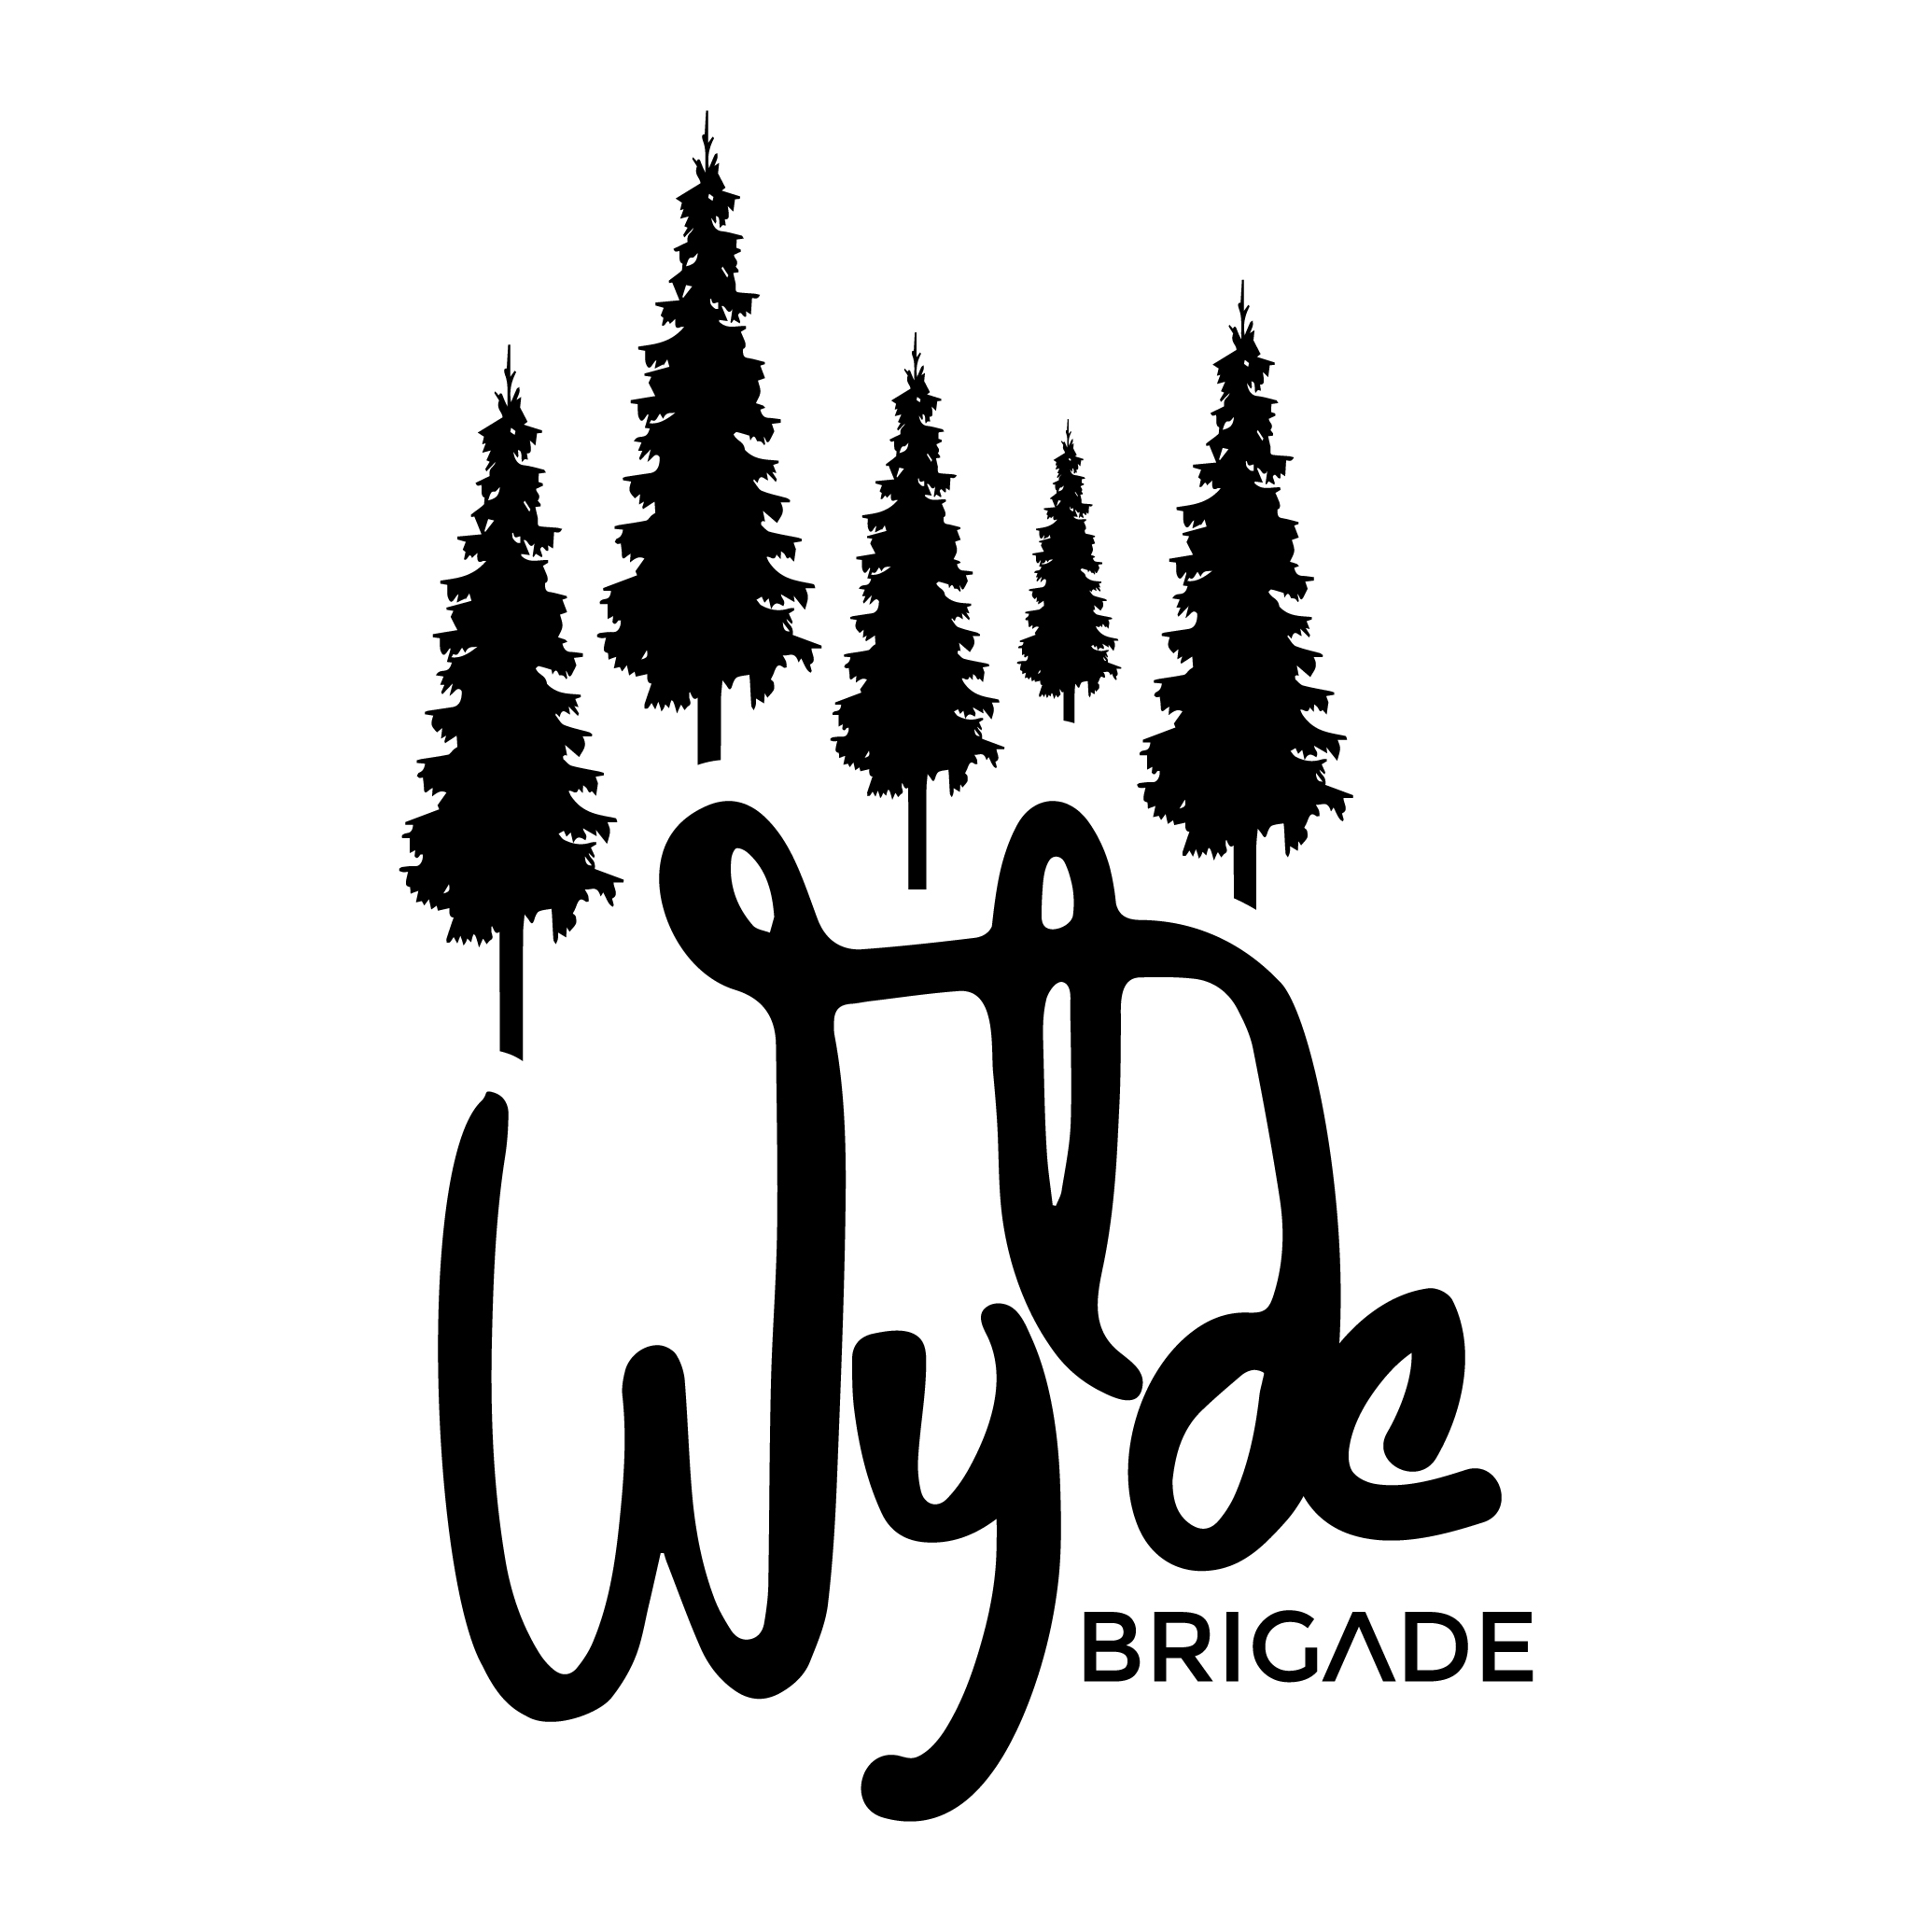 Photograph of Wylde Bridage